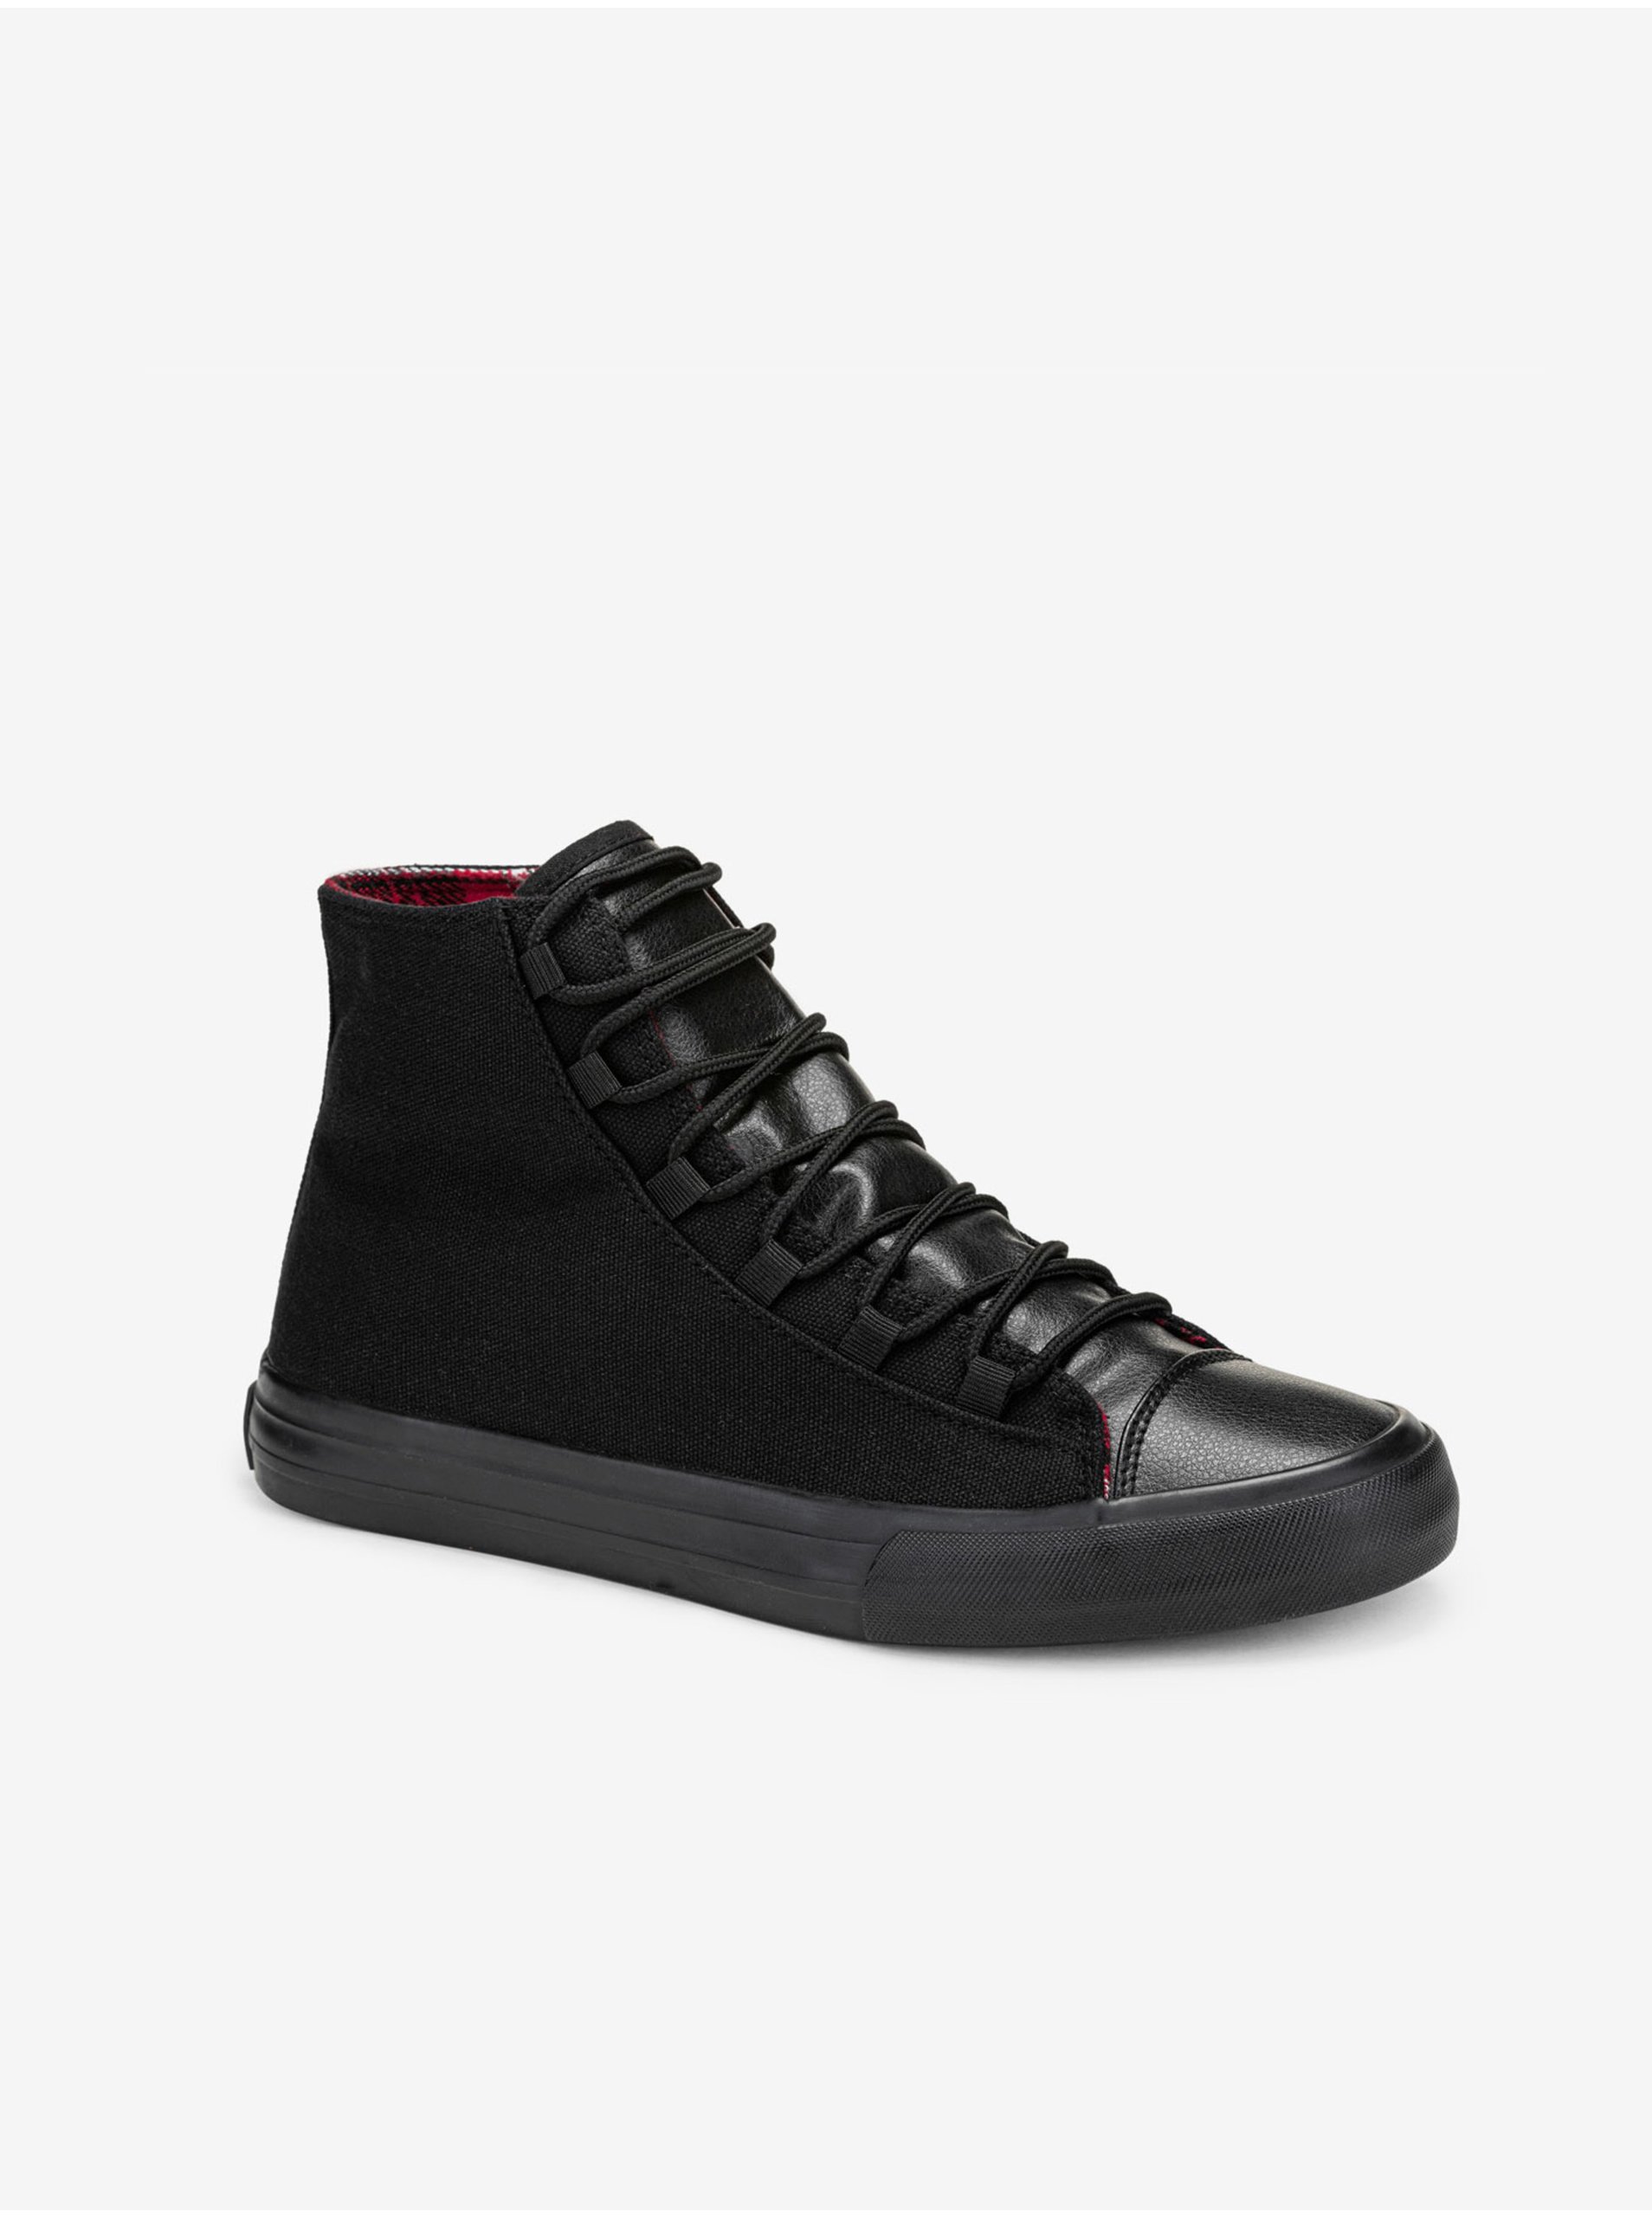 E-shop Čierne pánske sneakers topánky Ombre Clothing T378